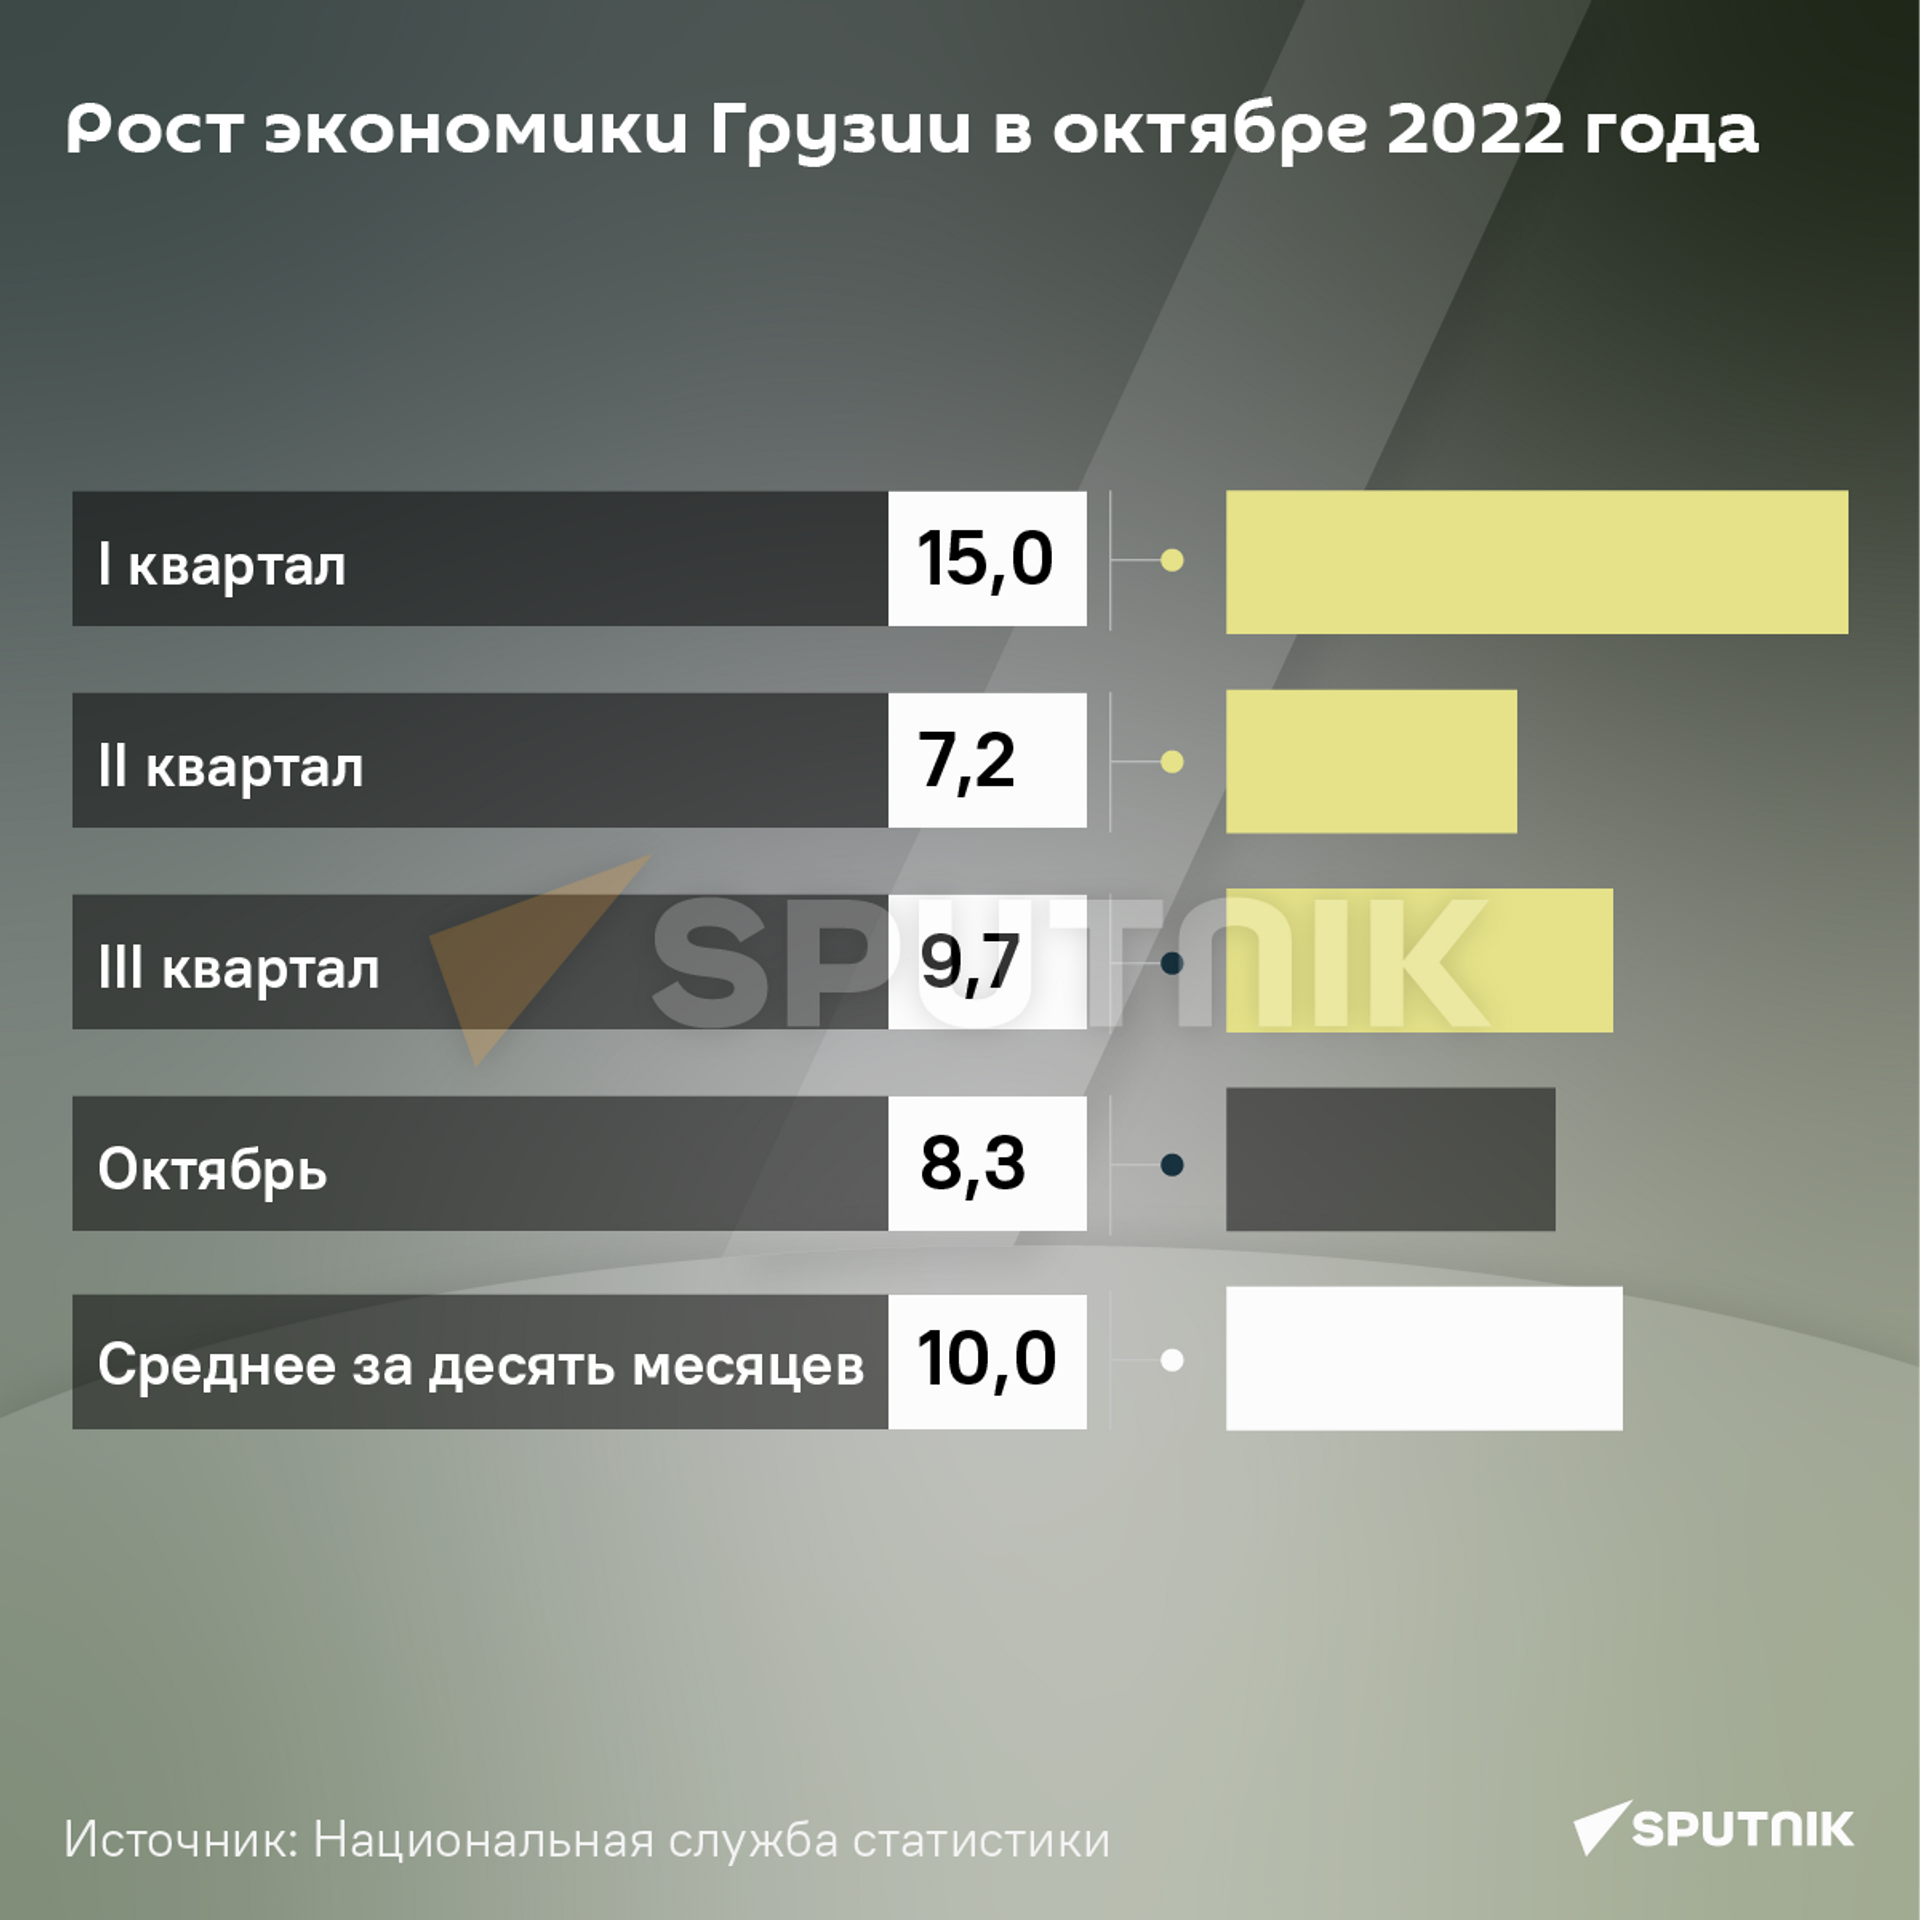 Рост экономики Грузии в октябре 2022 года  - Sputnik Грузия, 1920, 30.11.2022